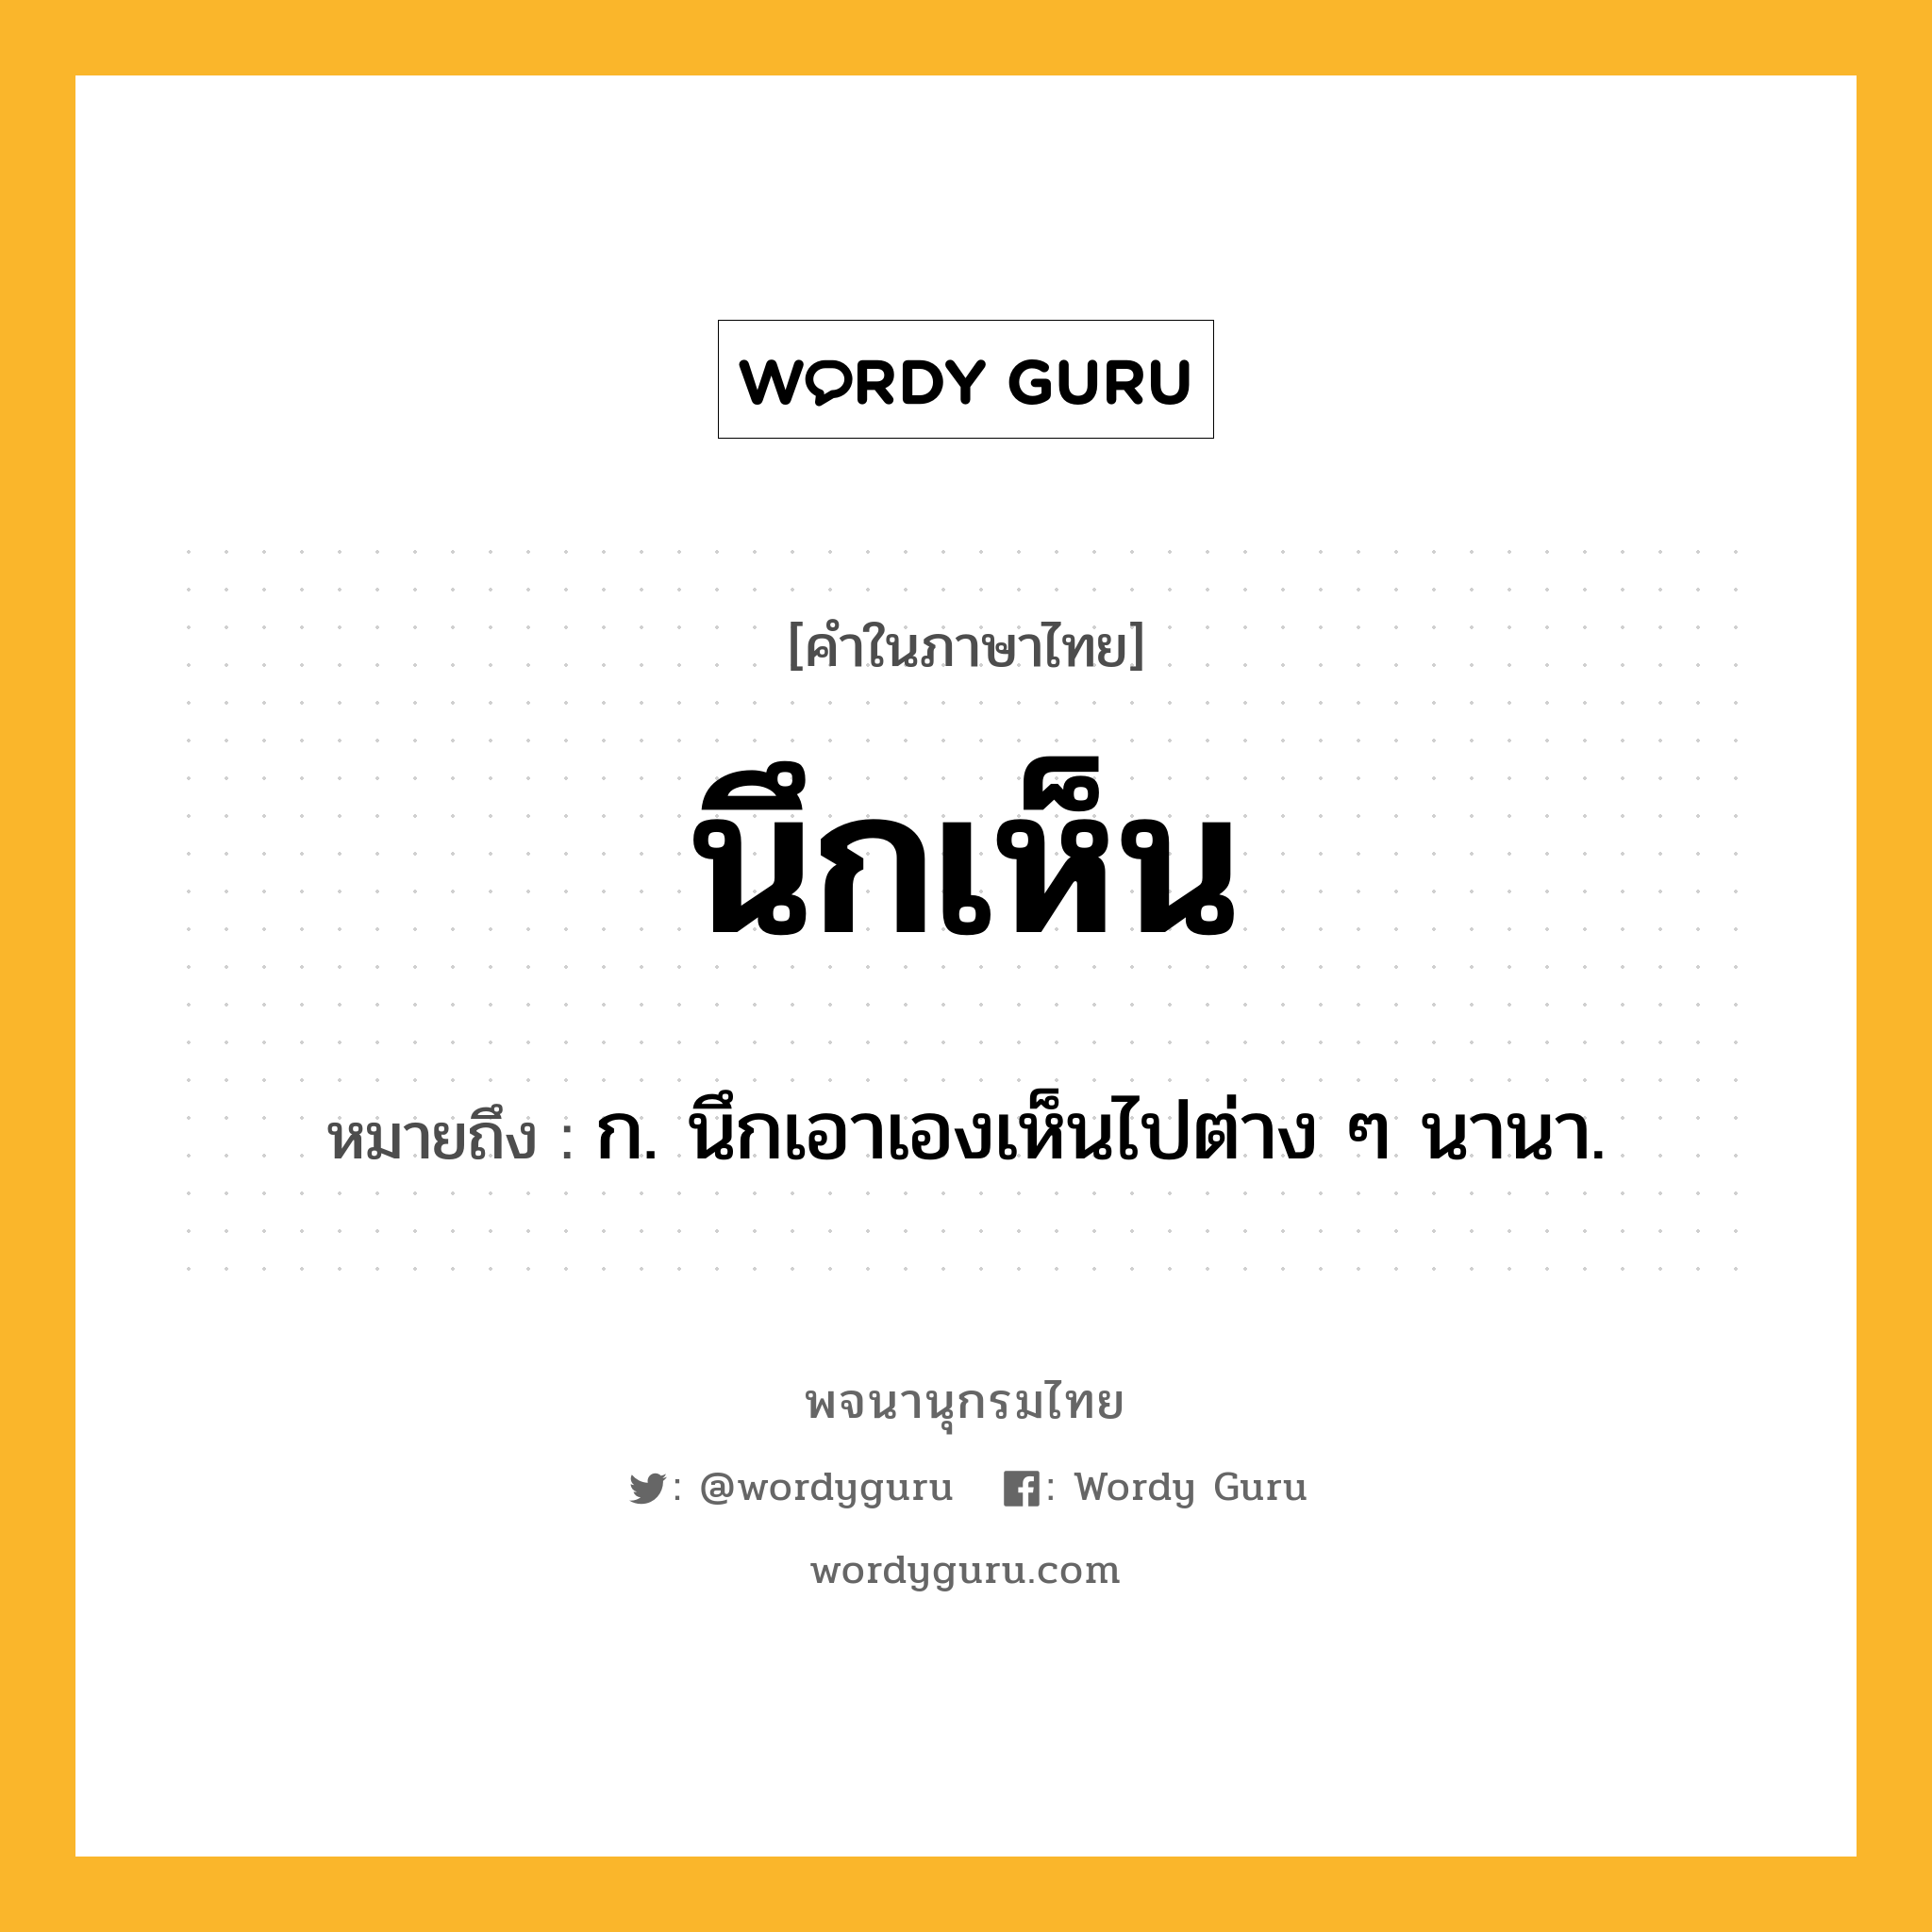 นึกเห็น หมายถึงอะไร?, คำในภาษาไทย นึกเห็น หมายถึง ก. นึกเอาเองเห็นไปต่าง ๆ นานา.